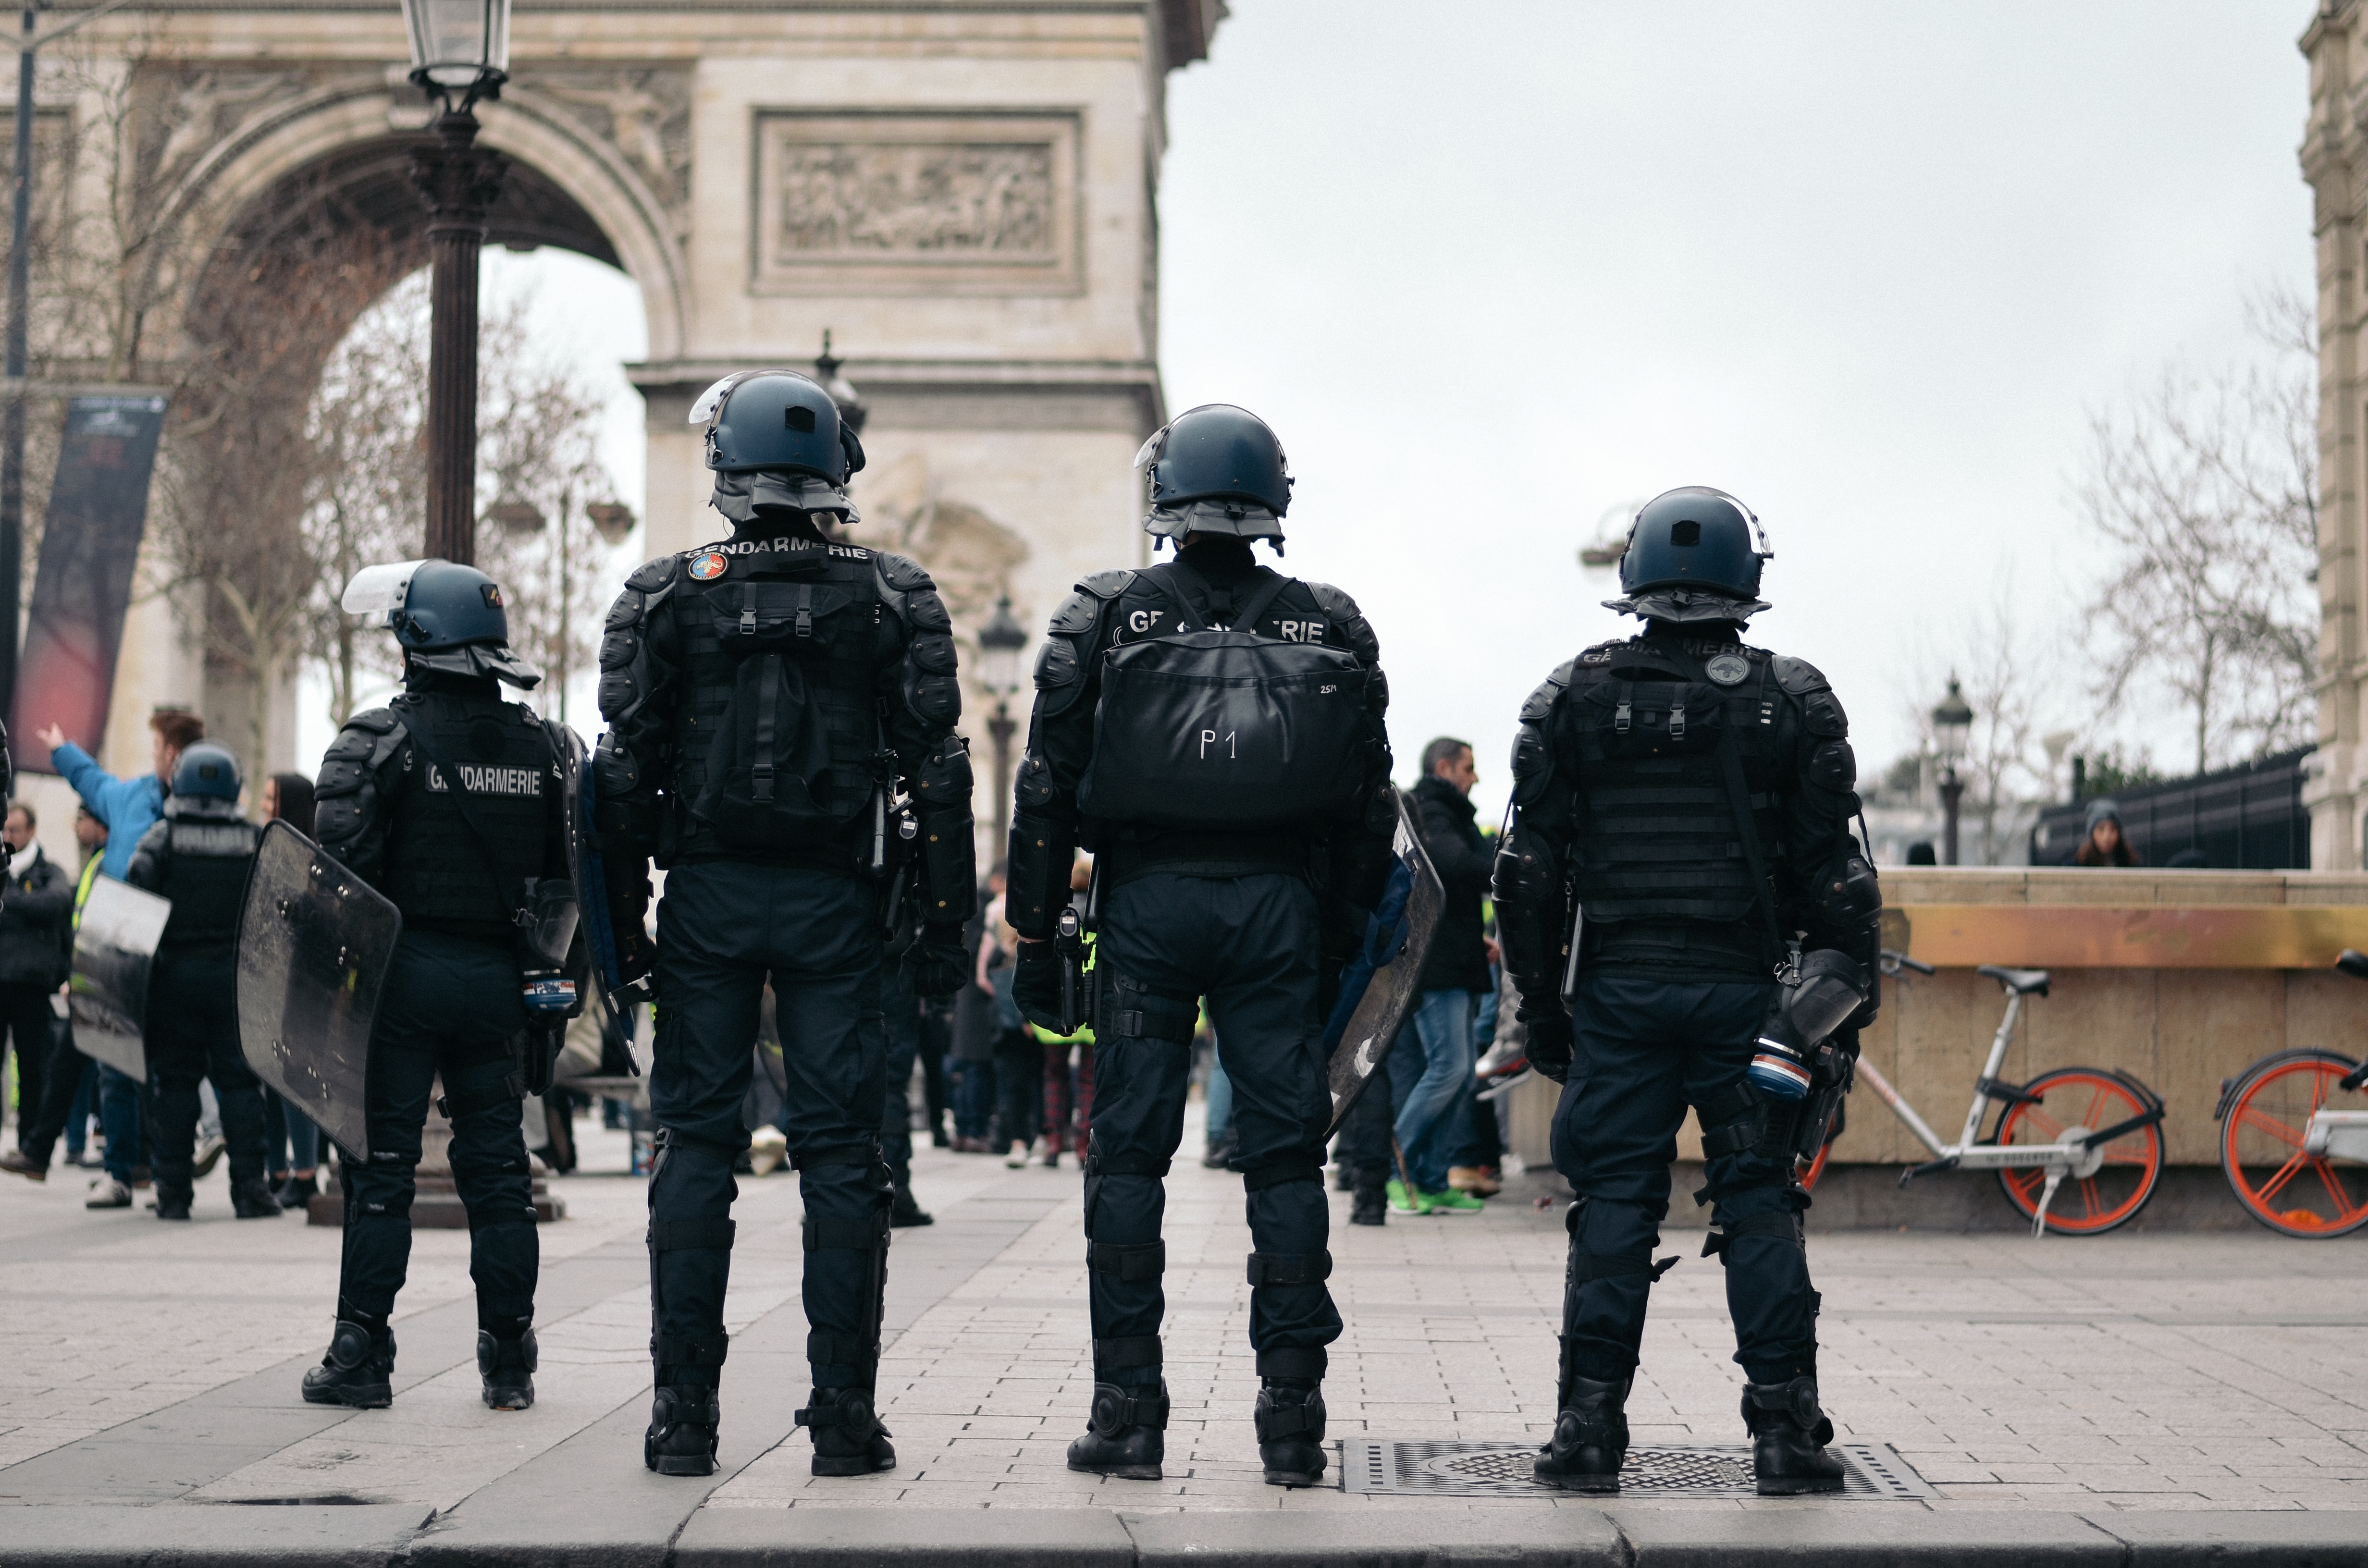 Gendarmerie in Paris